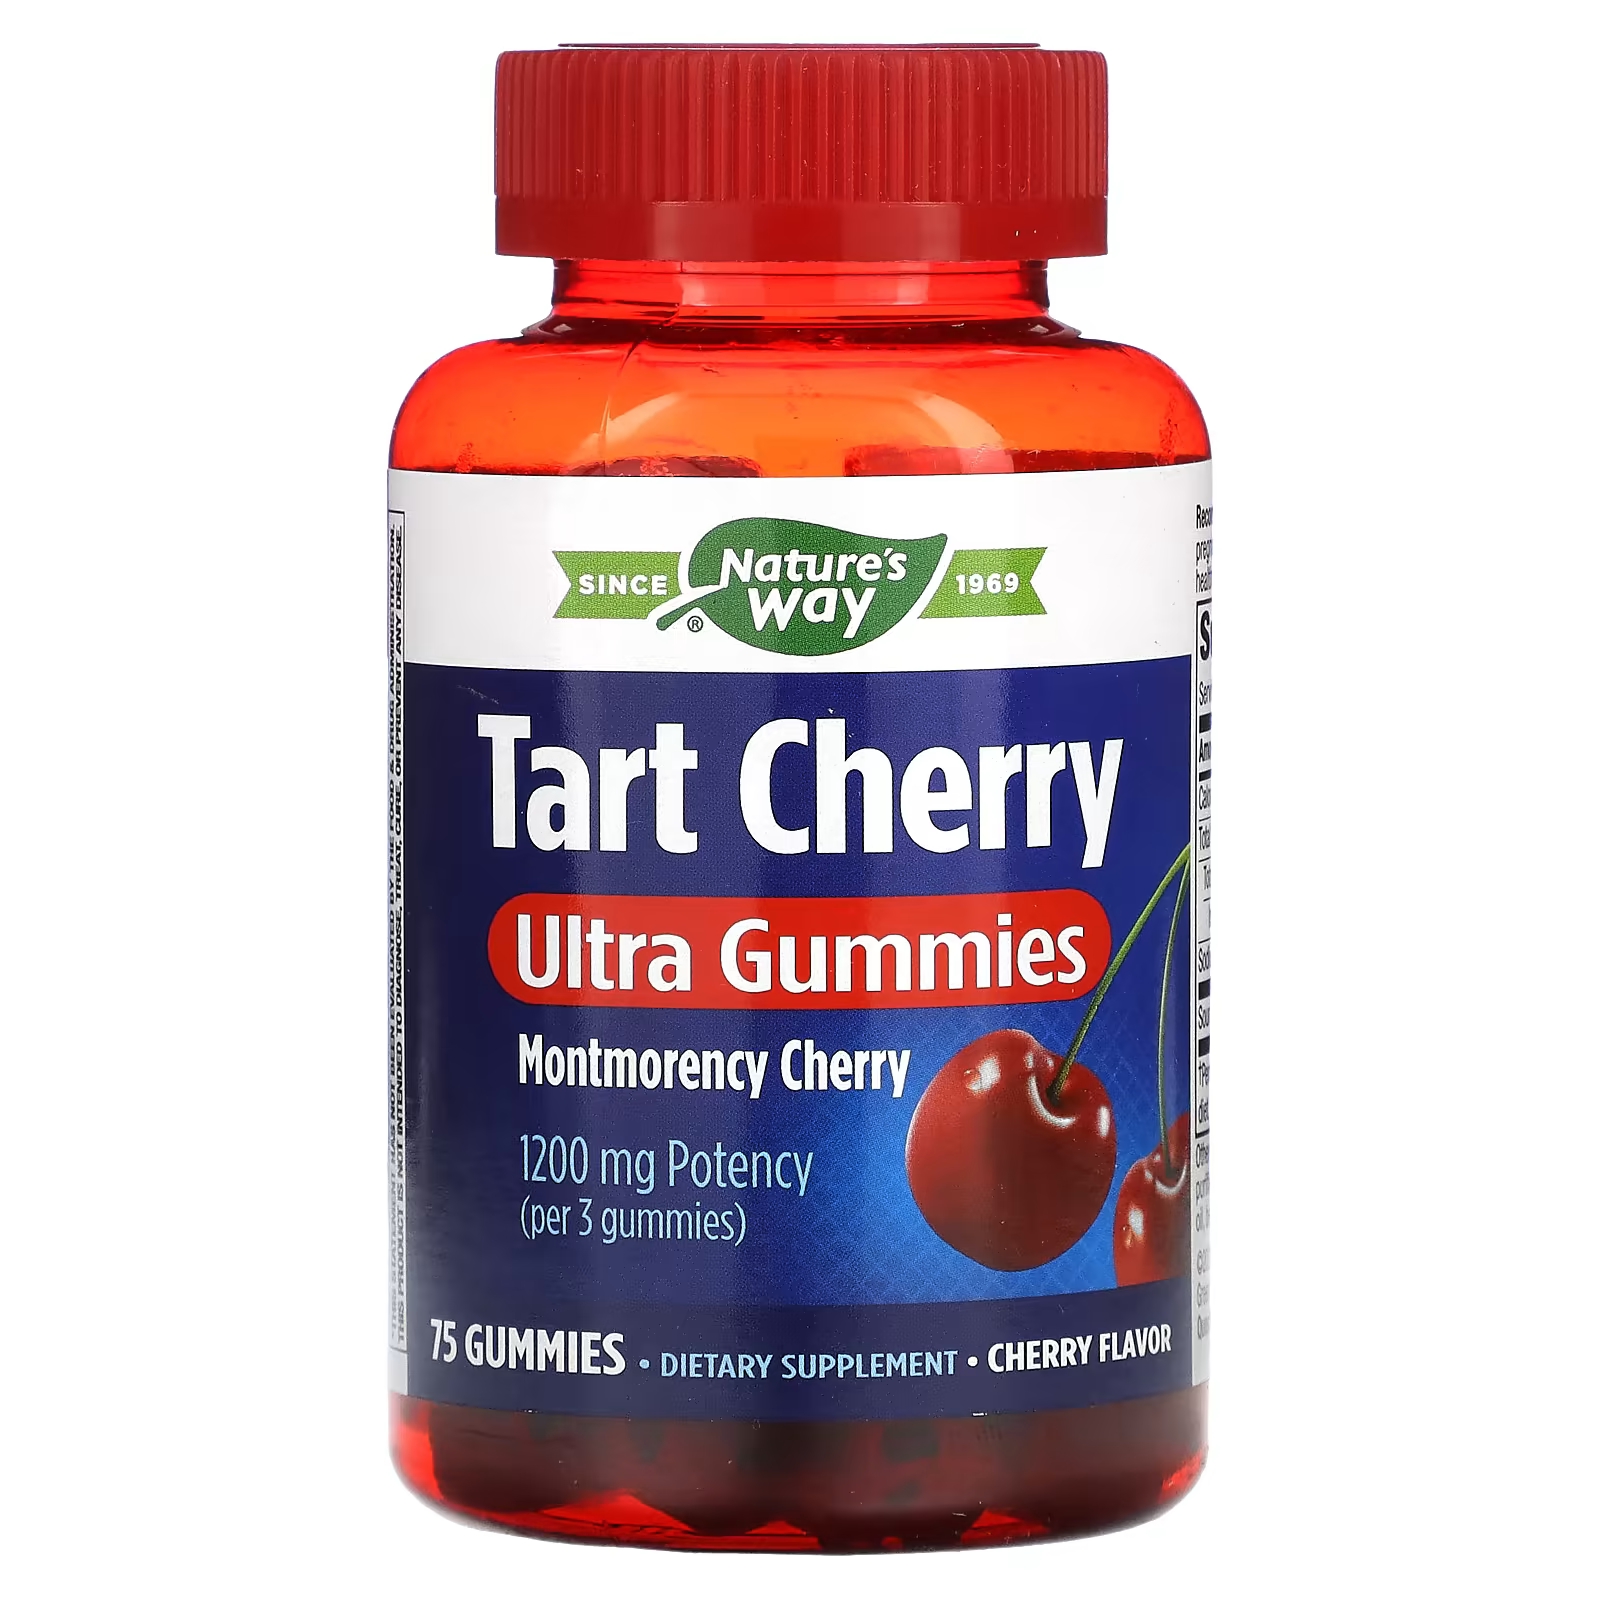 Пищевая добавка Nature's Way Tart Cherry Ultra Gummies Cherry 1200 мг, 75 жевательных конфет аскорбинка с глюкозой и сахаром вкус вишни abc healthy food таблетки жевательные 3г 10шт